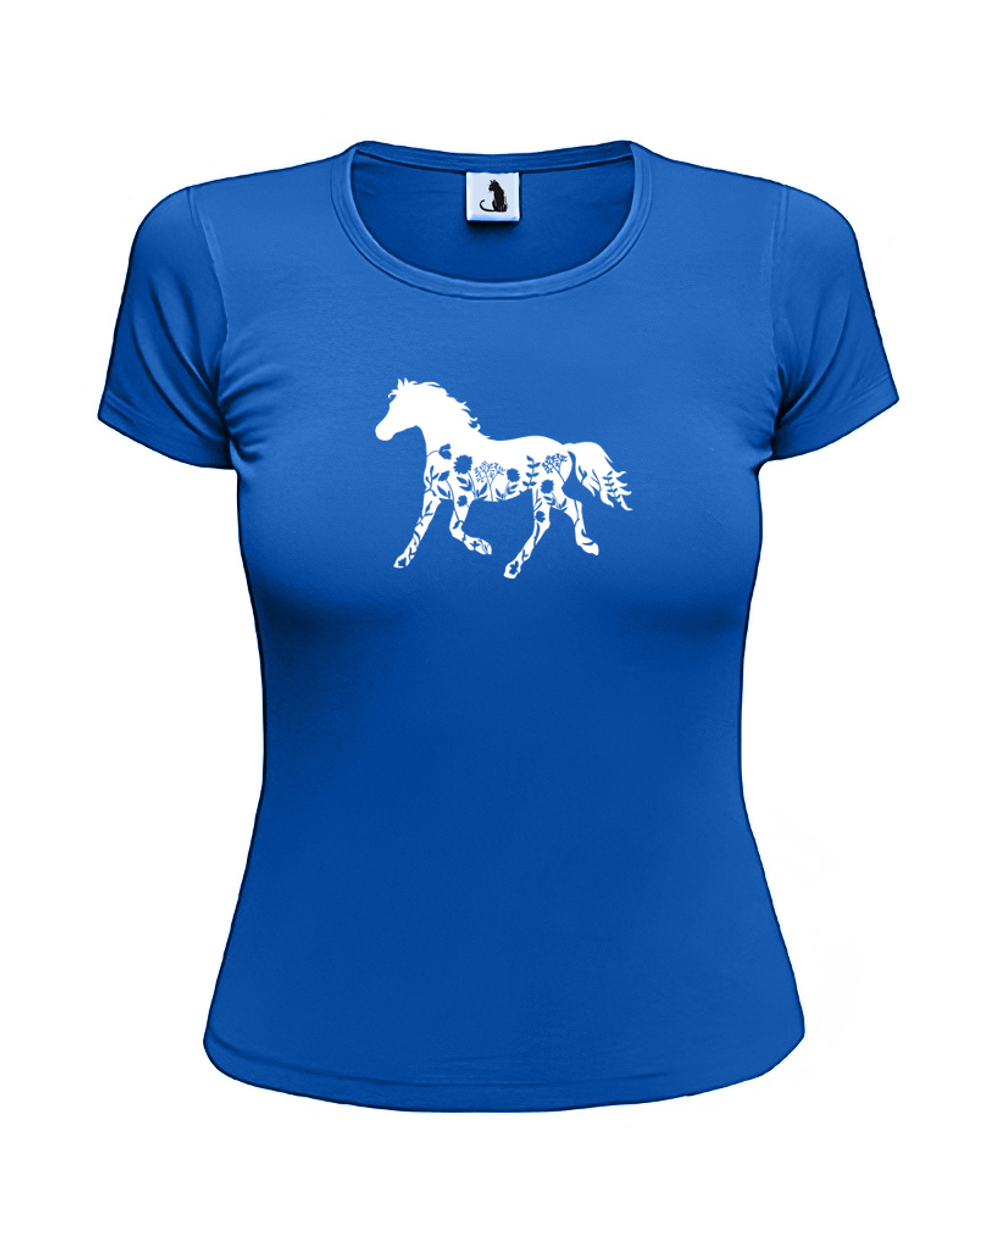 Футболка с лошадью и цветами женская приталенная синяя с белым рисунком